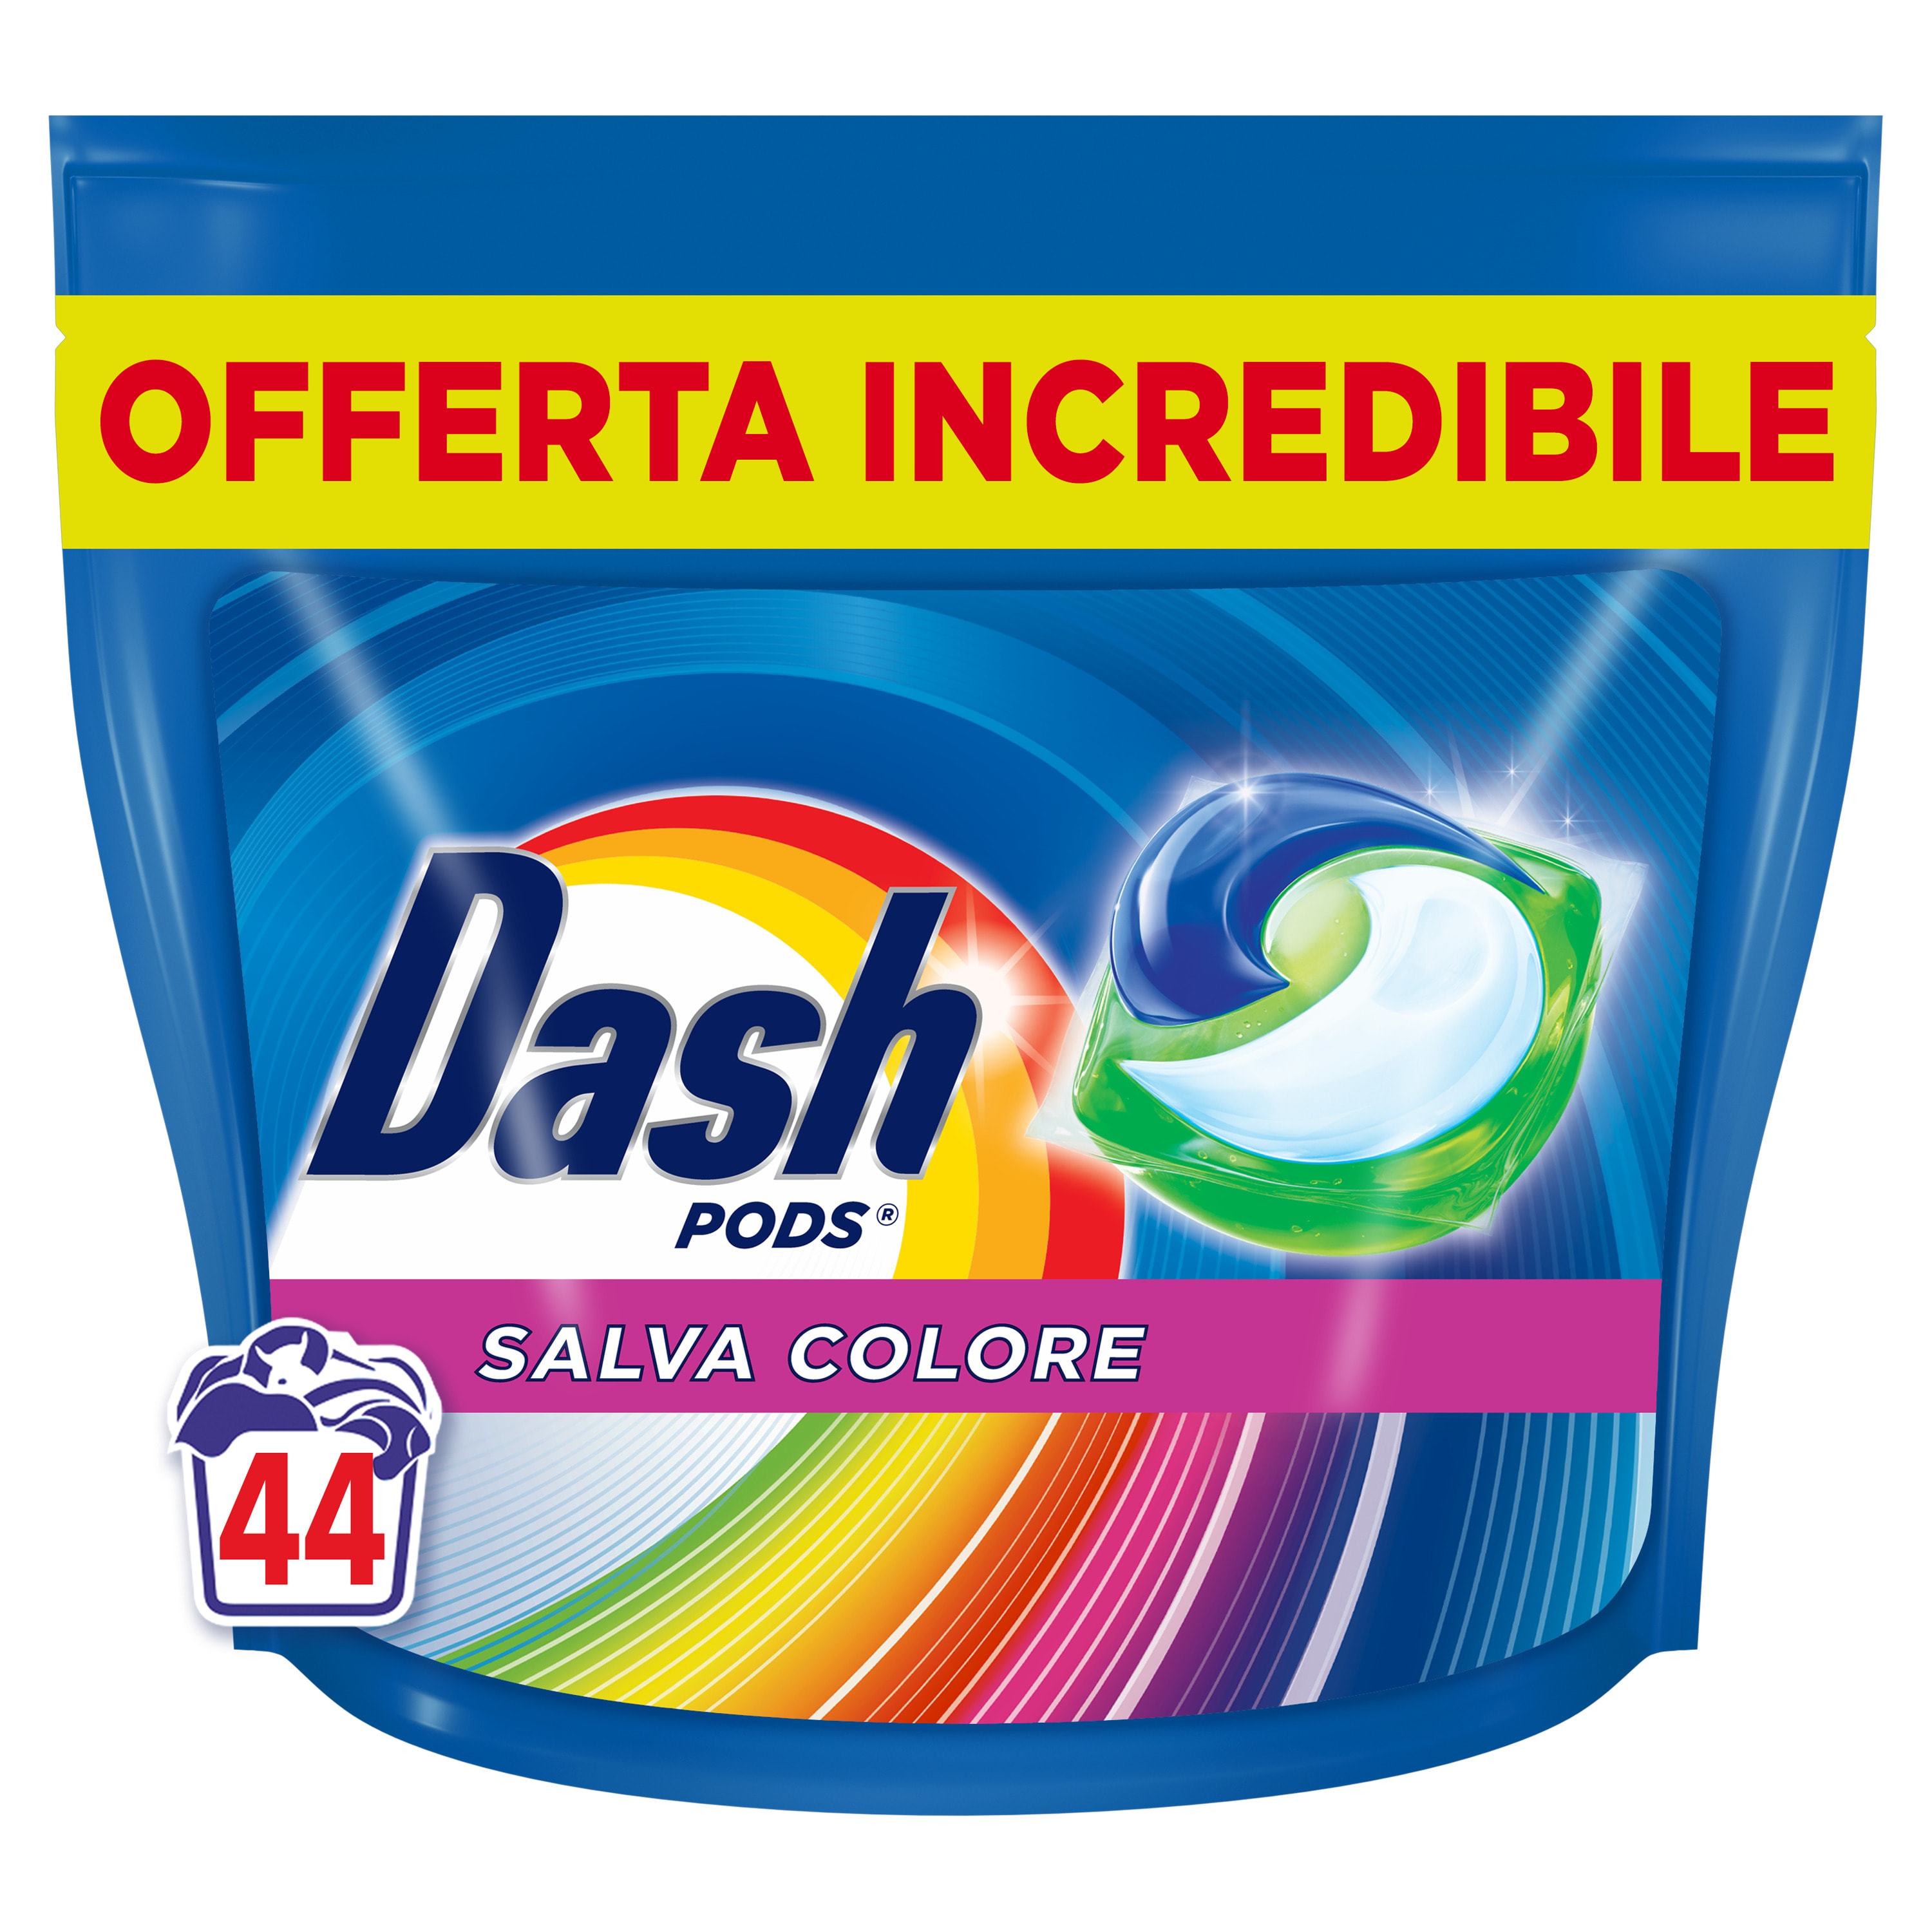 Dash Pods all in1 Detersivo Lavatrice Salva Colore 55 Lavaggi